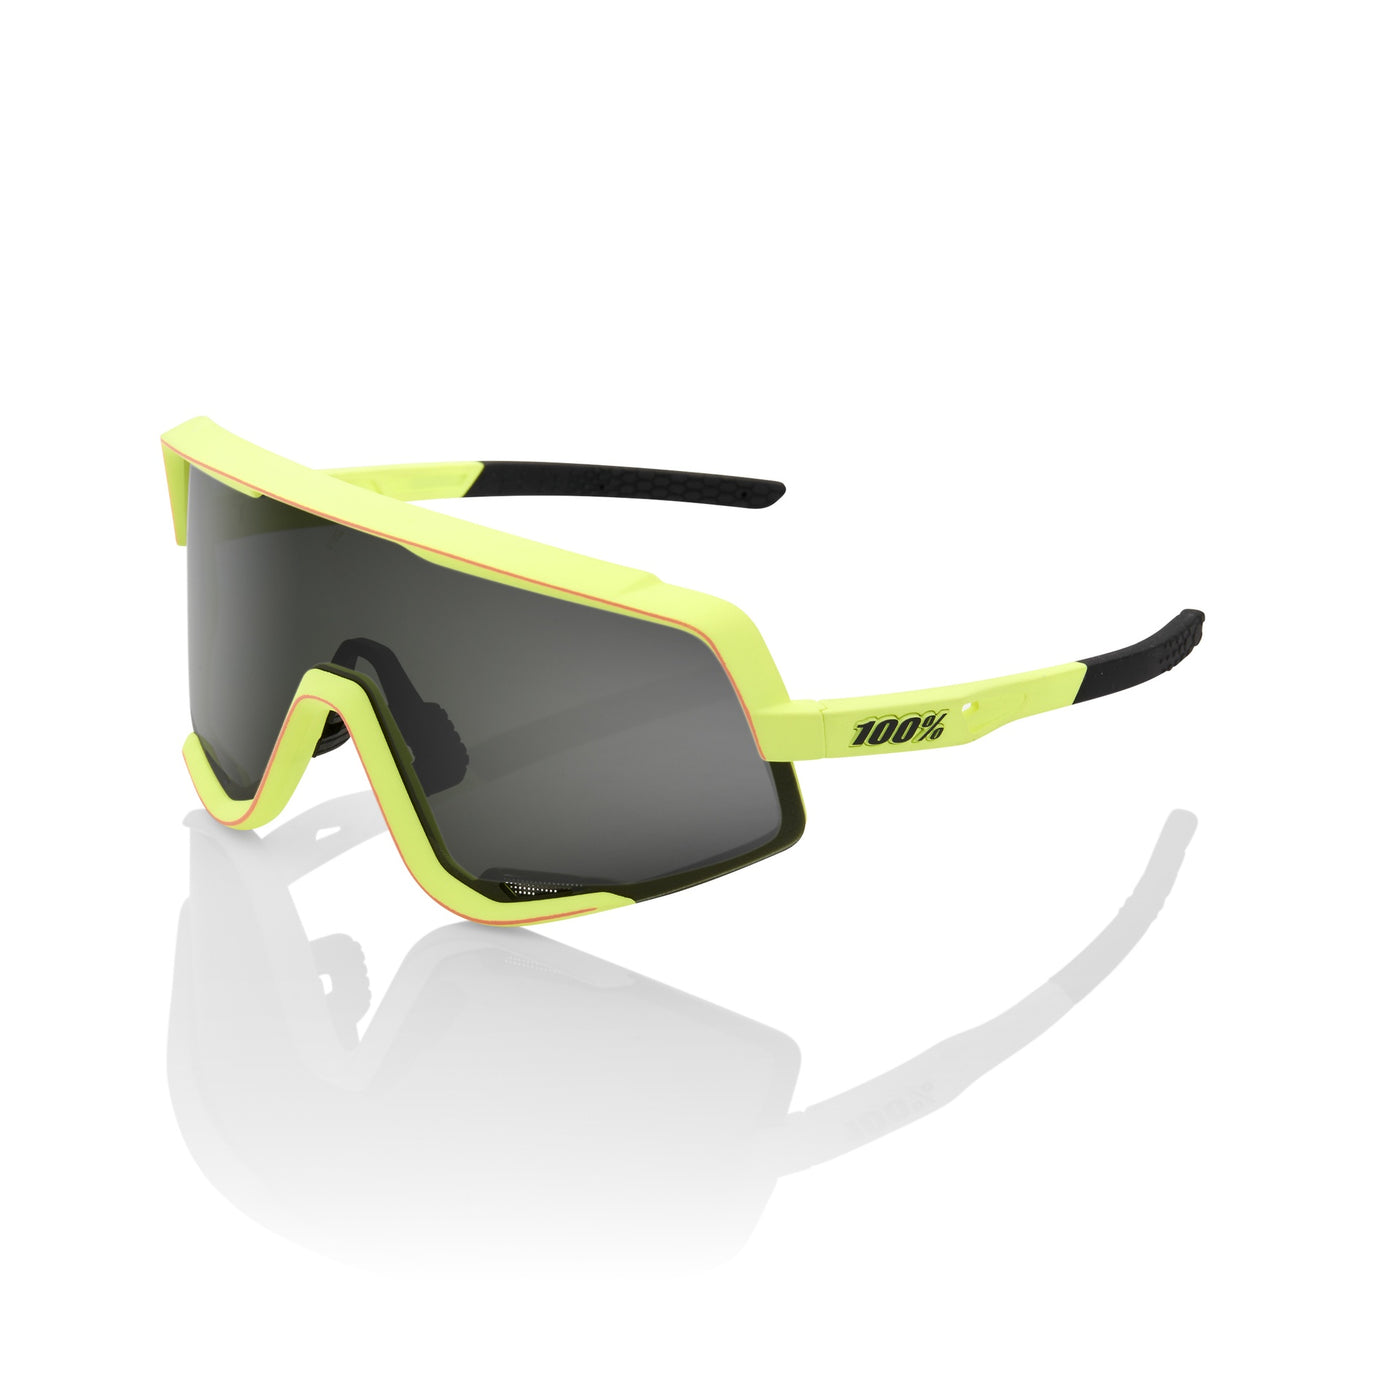 Sunglasses 100% Glendale - Soft Tact Washed Out Neon Yellow - Smoke